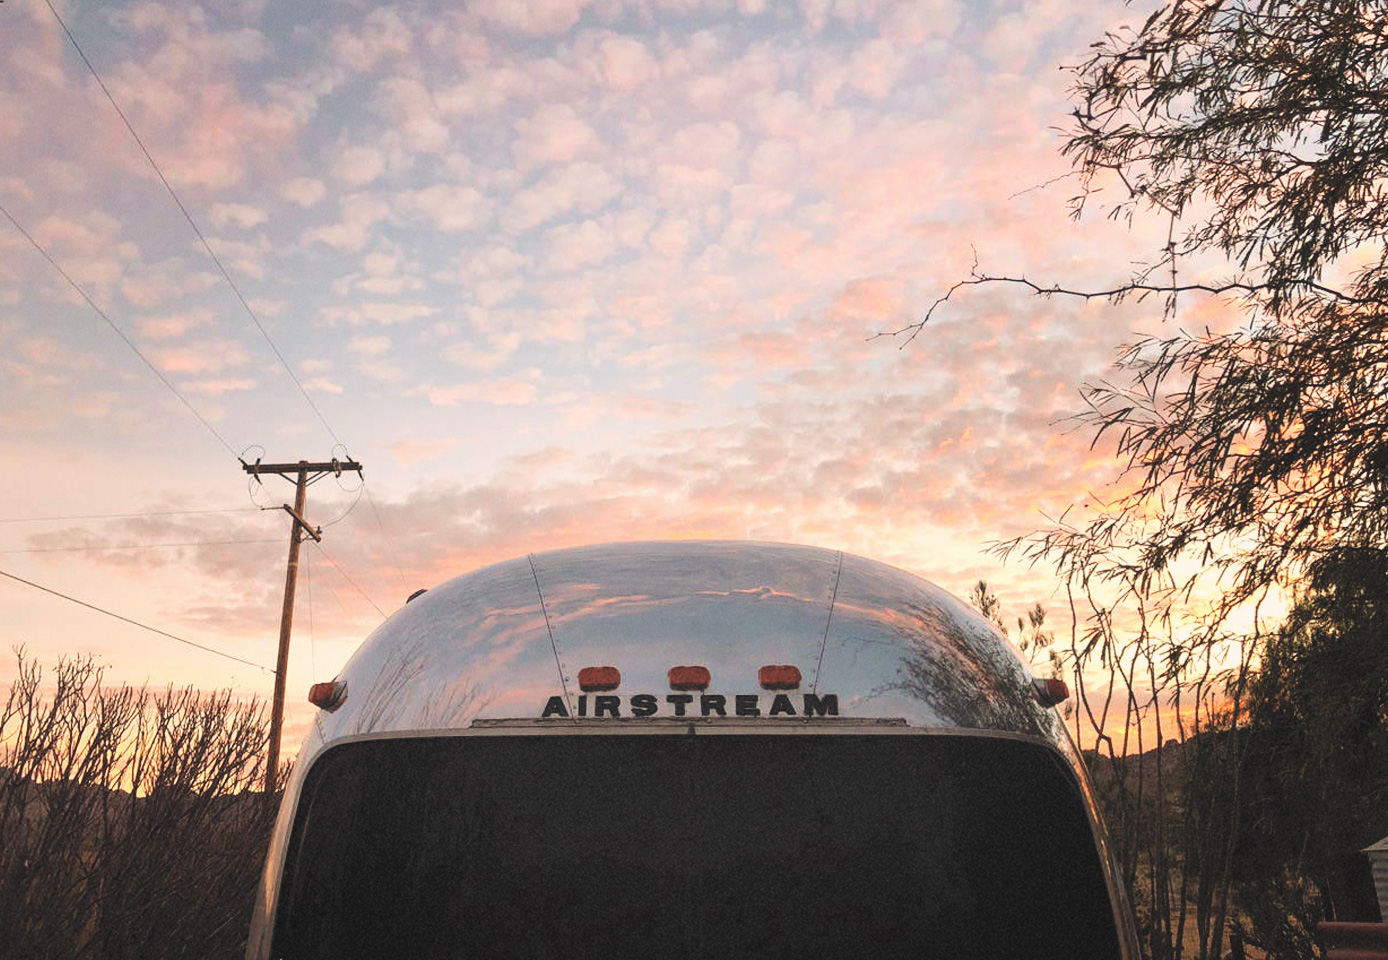 Airstream trailer exterior